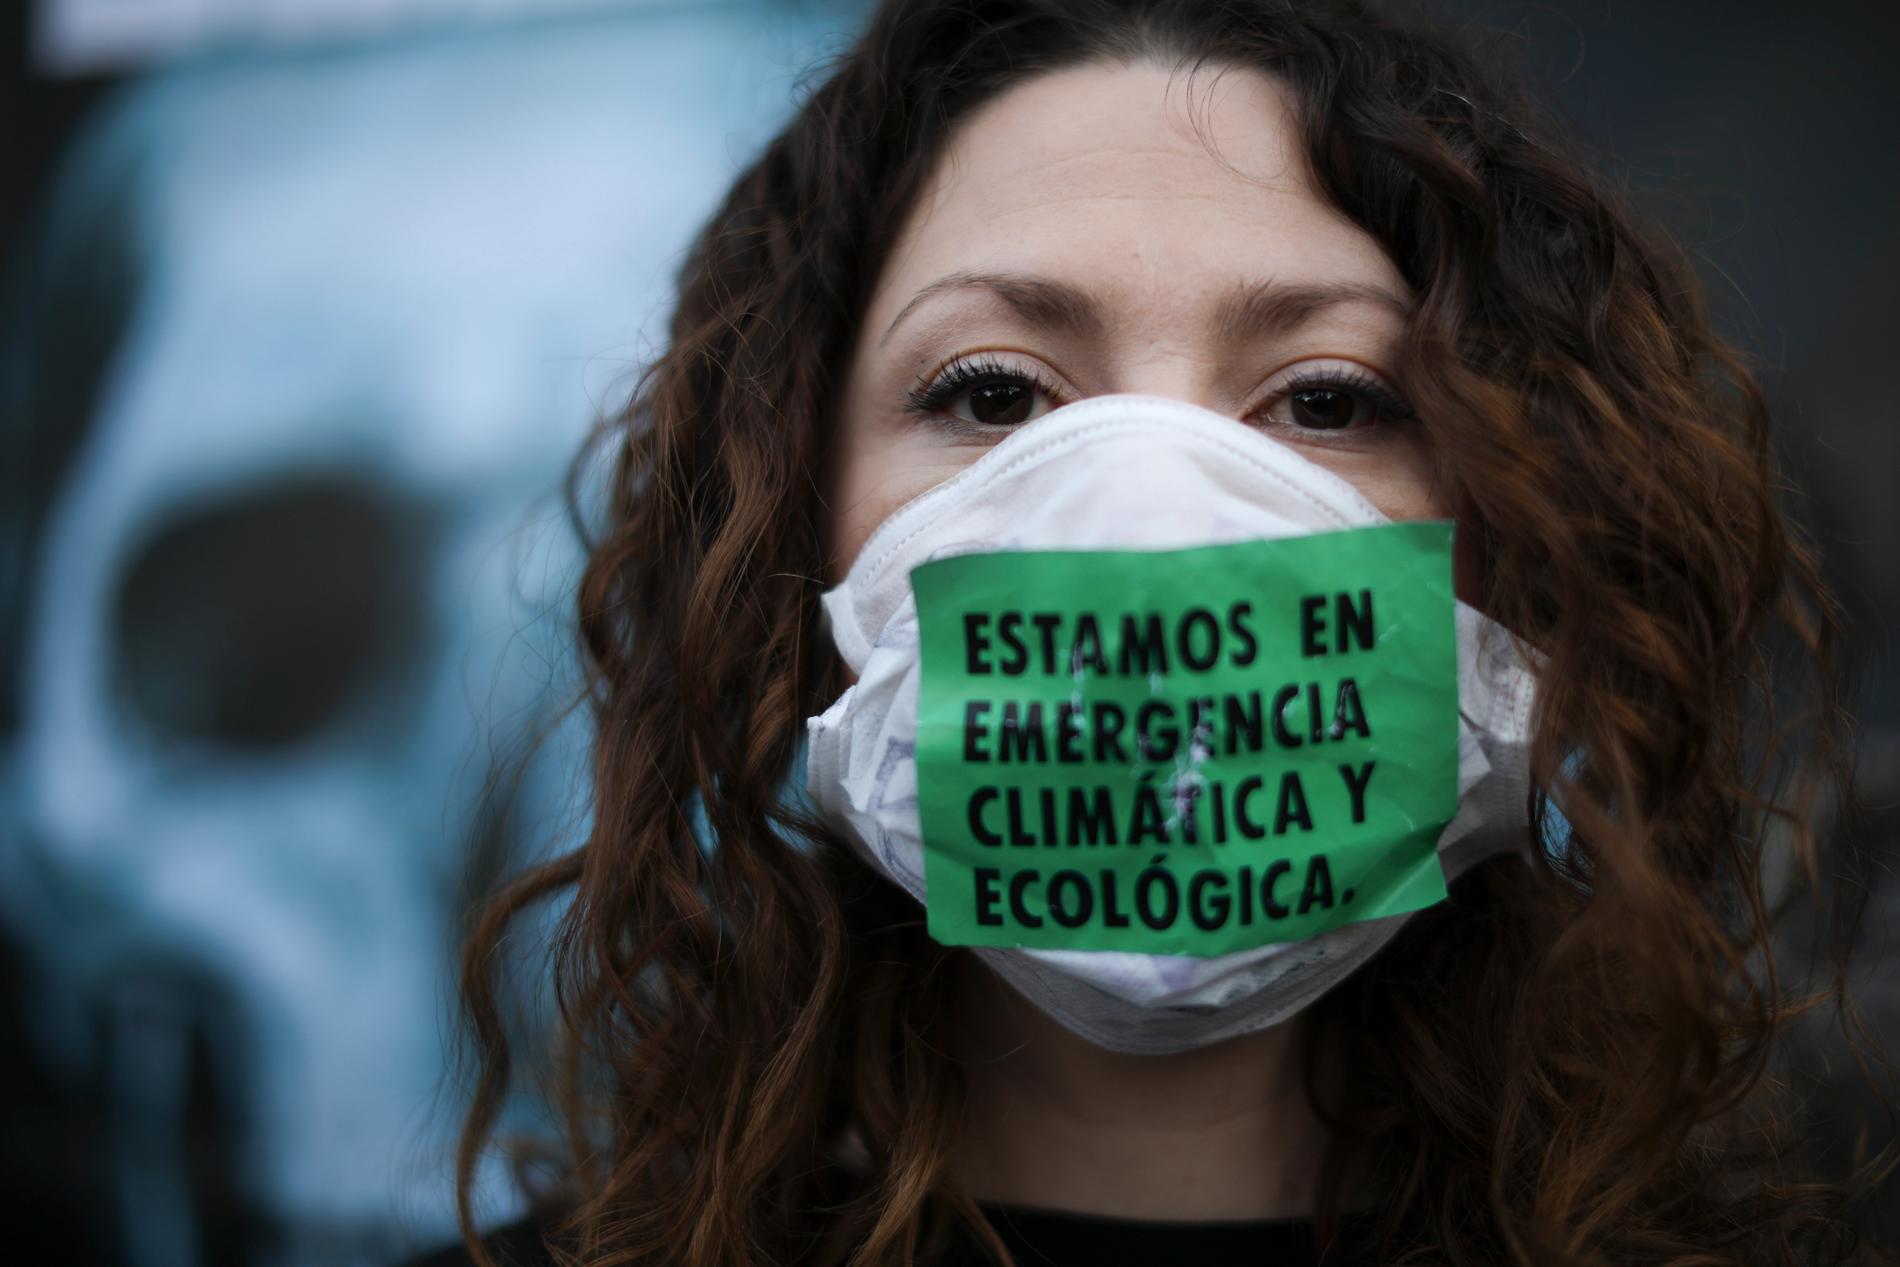 "Vi är i ett nödläge för klimatet och ekologin" står det på ansiktsmasken som en demonstrant bär vid demonstrationer utanför Brasiliens ambassad i Argentinas huvudstad Buenos Aires i augusti i år. Demonstranterna uppmanade specifikt Brasiliens president Jair Bolsonaro att skydda regnskogen i Amazonas.